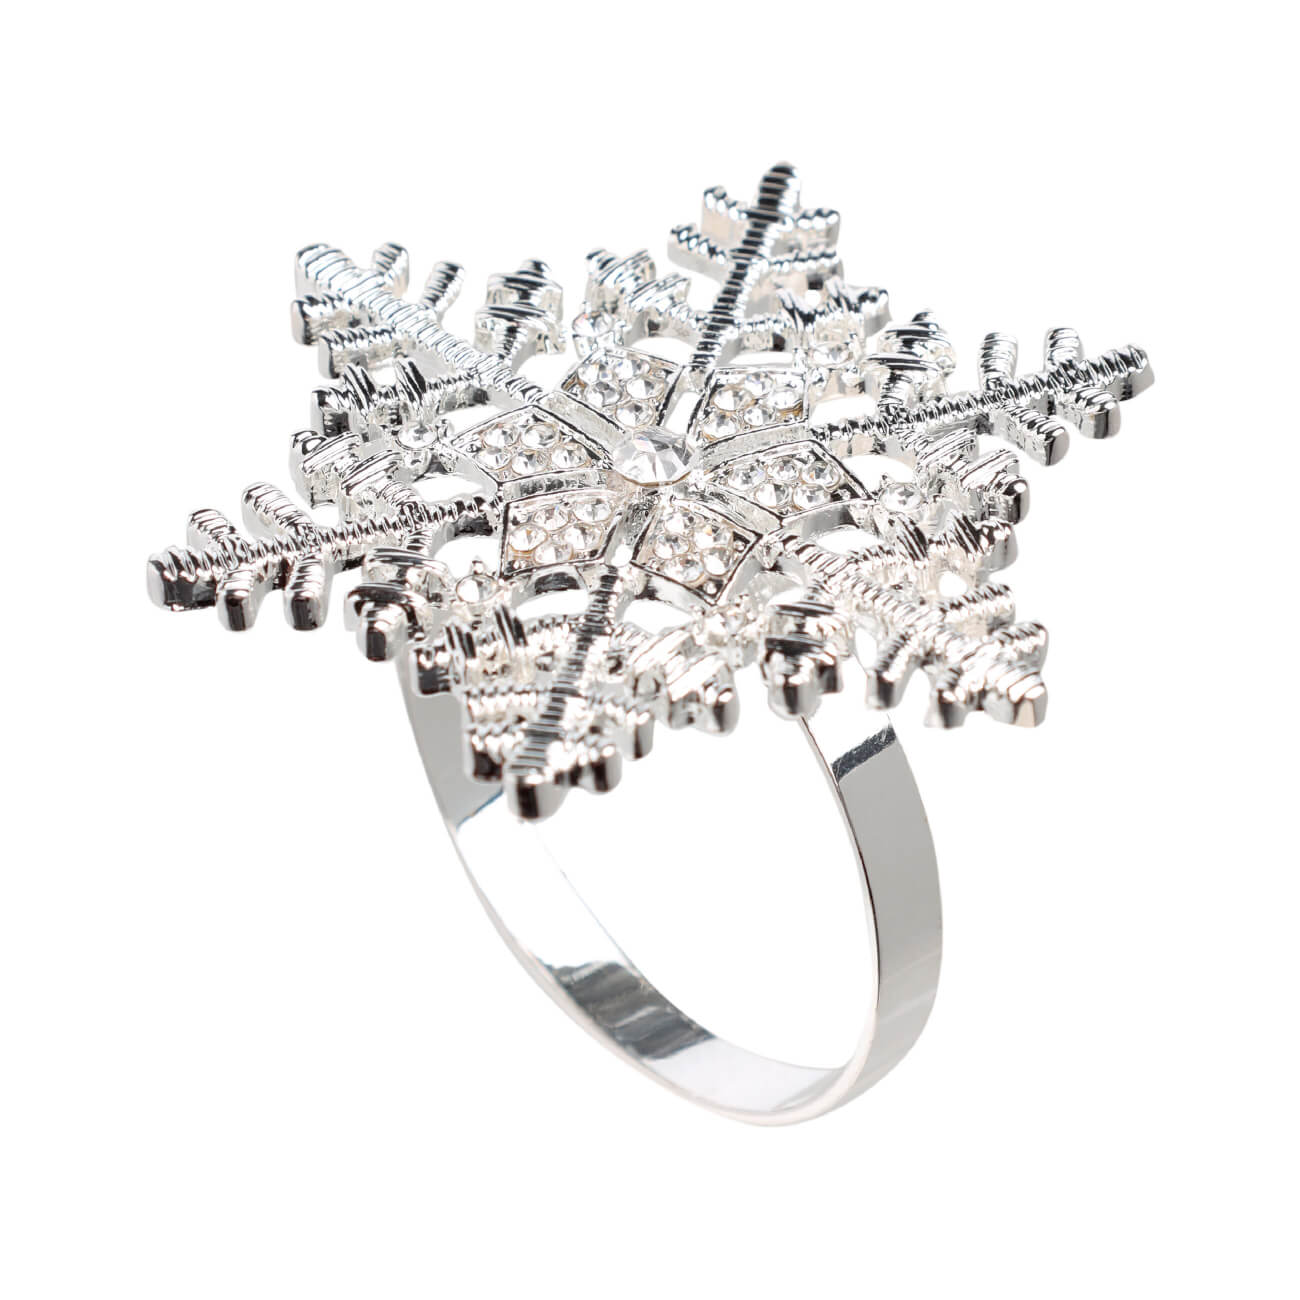 Кольцо для салфеток, 5 см, металл, серебристое, Снежинка, Snowfall кольцо amore ок ное в серебре безразмерно